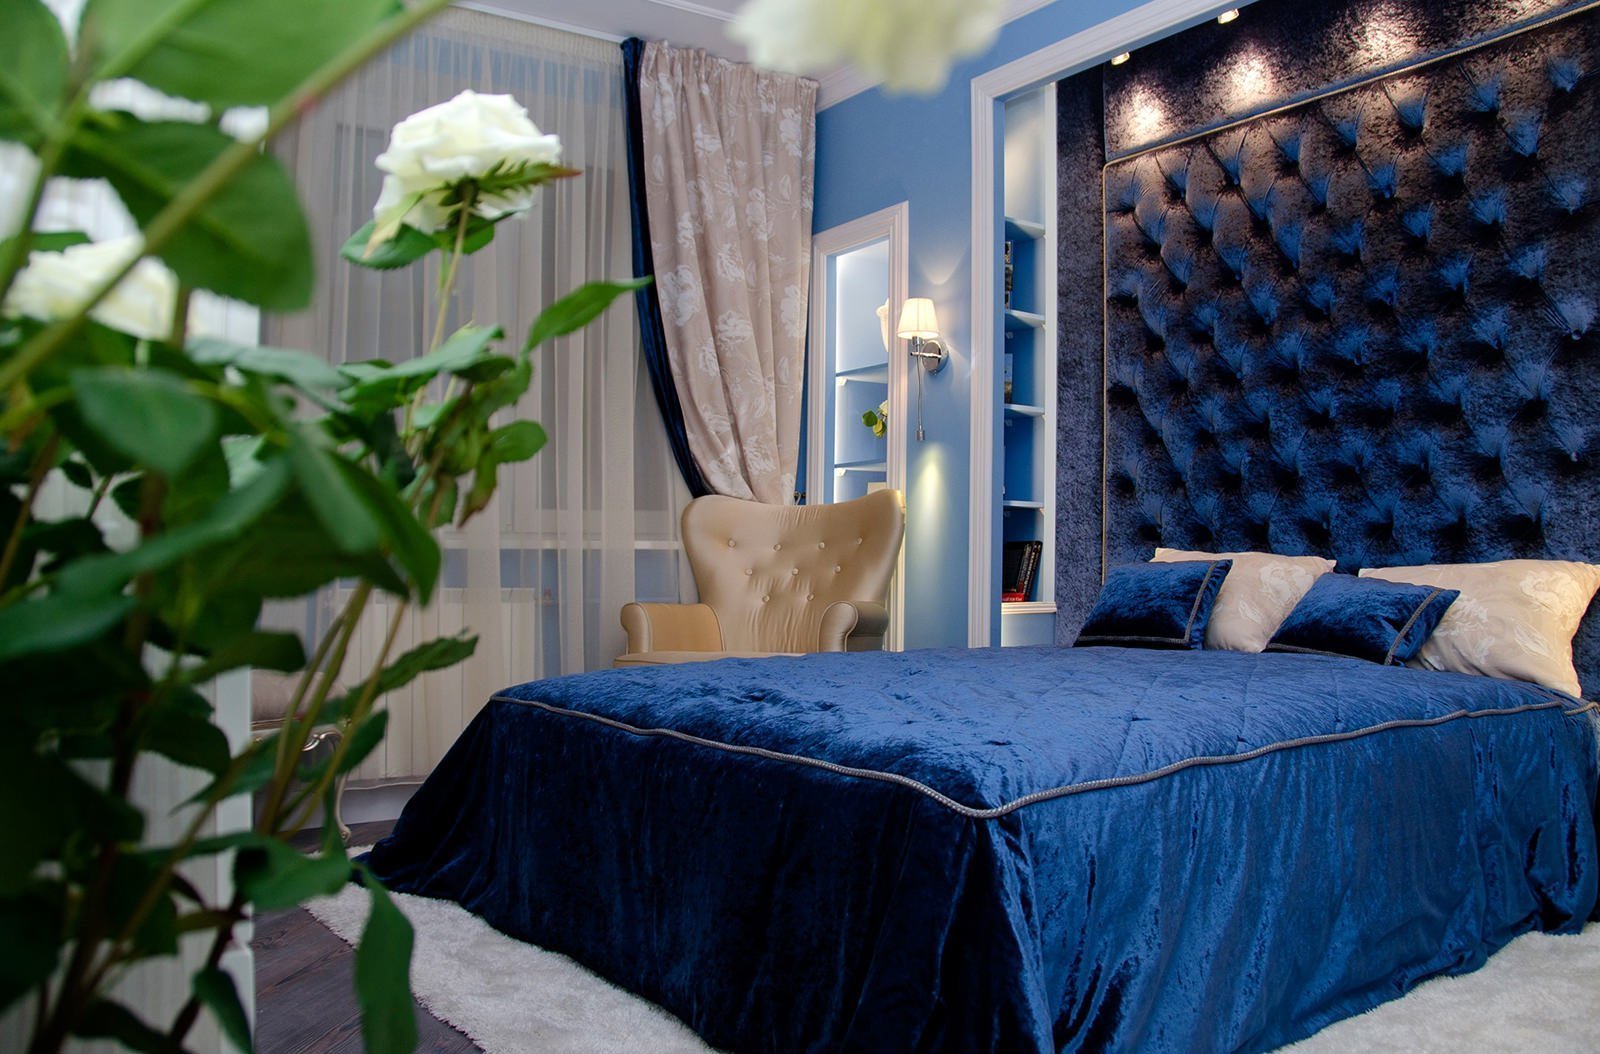 bilik tidur dalam foto reka bentuk biru